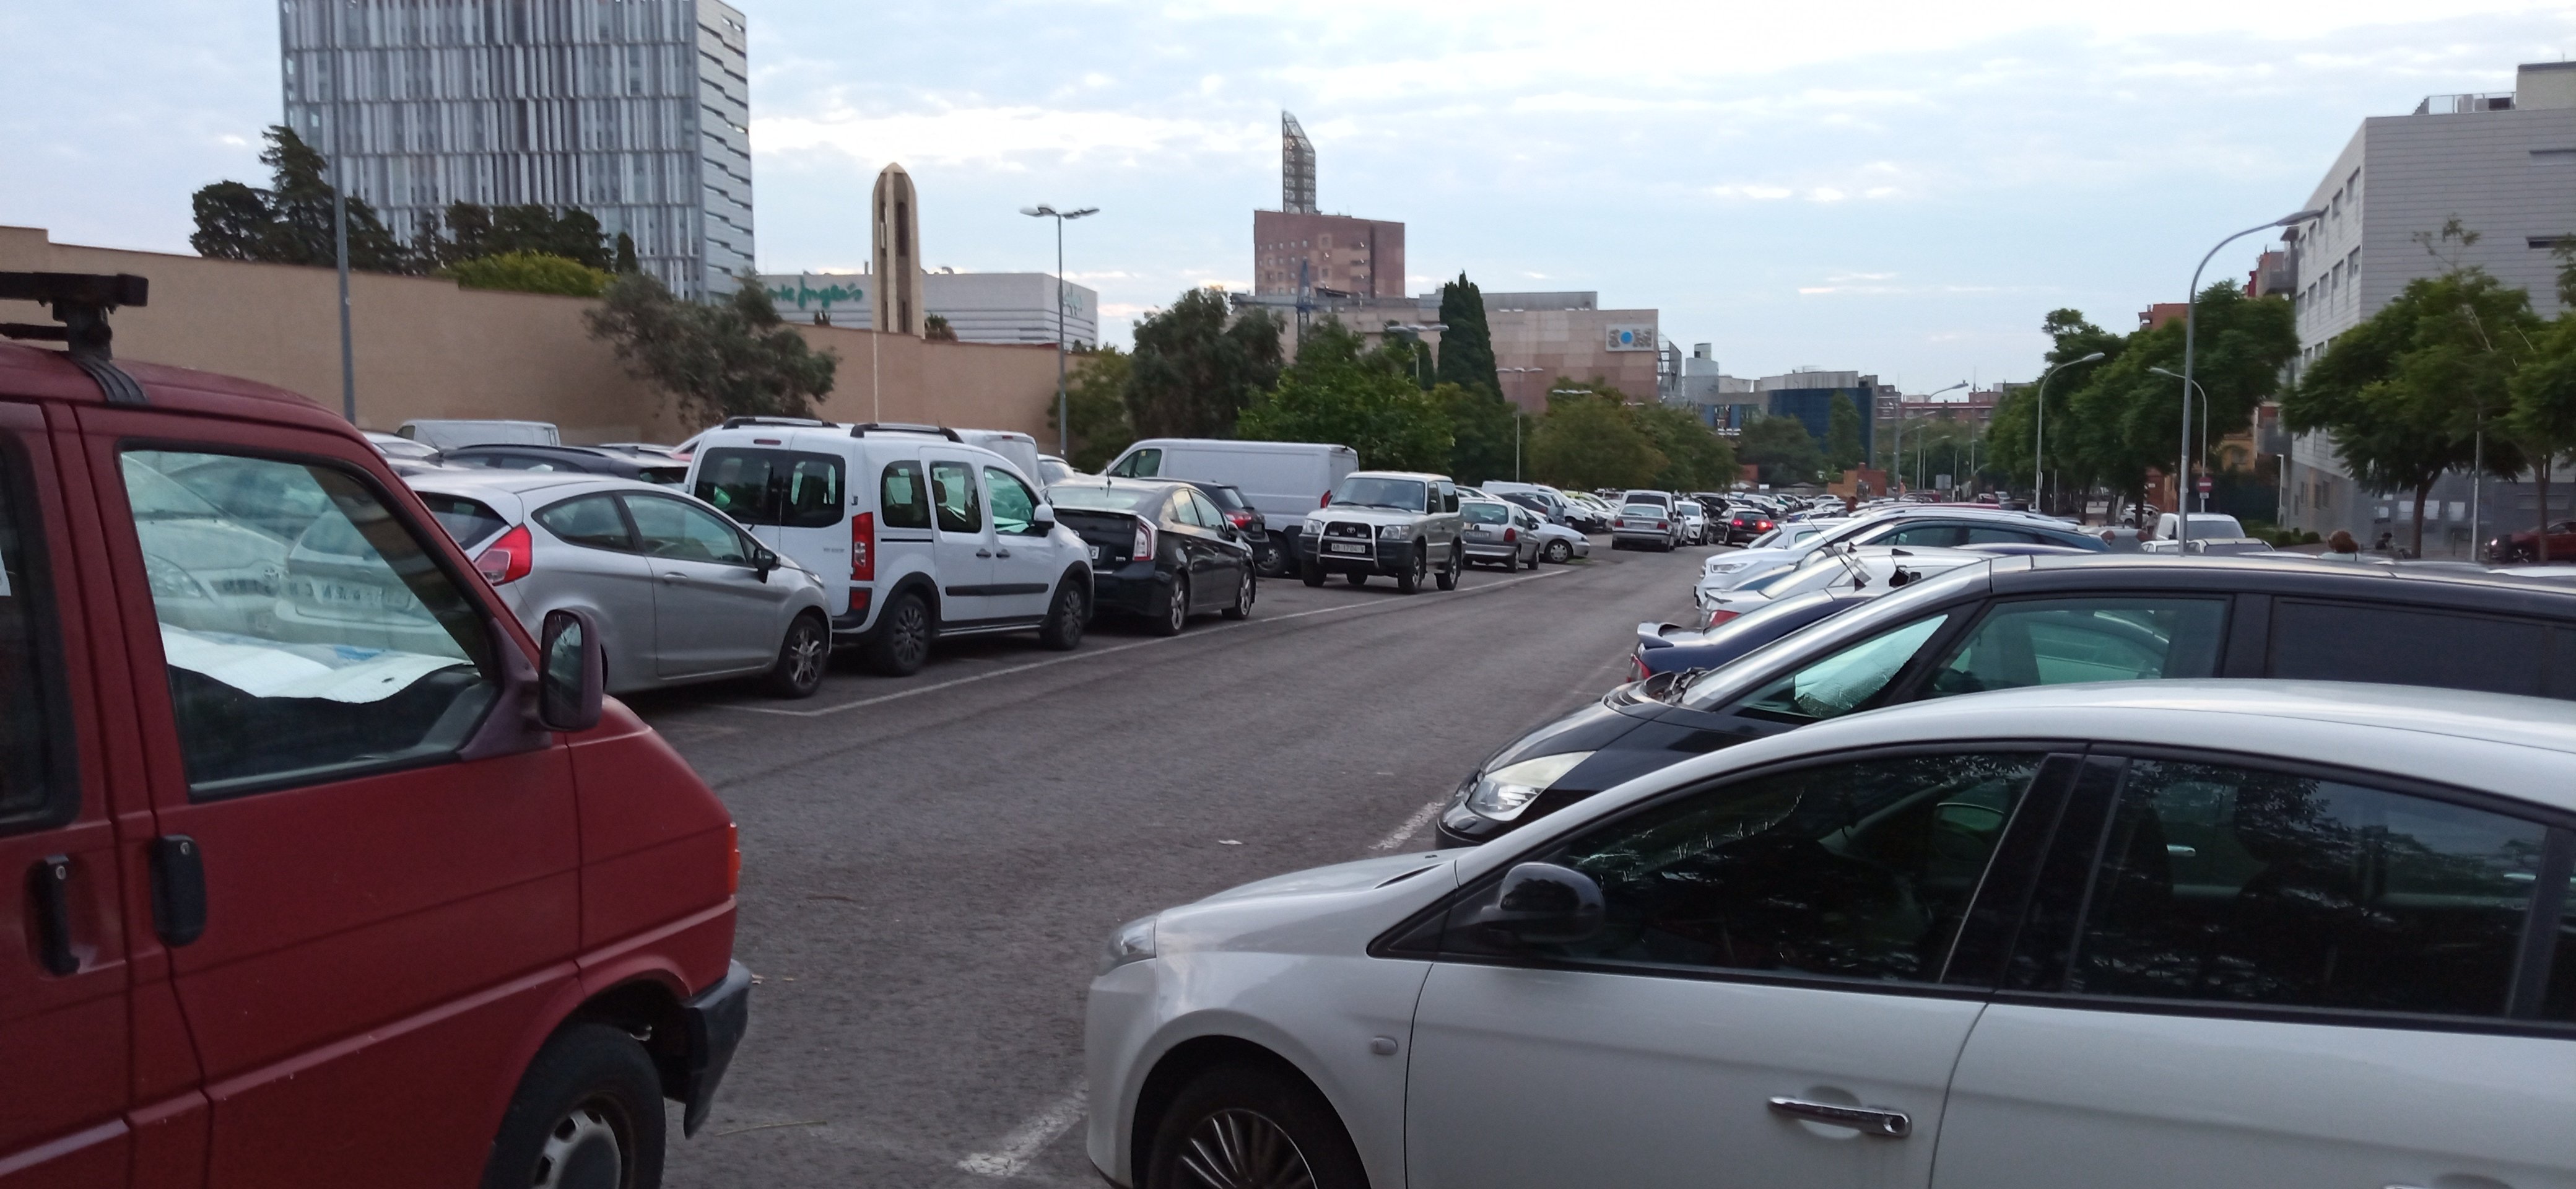 Un tanatorio más y 300 aparcamientos menos en torno al cementerio de Sant Andreu